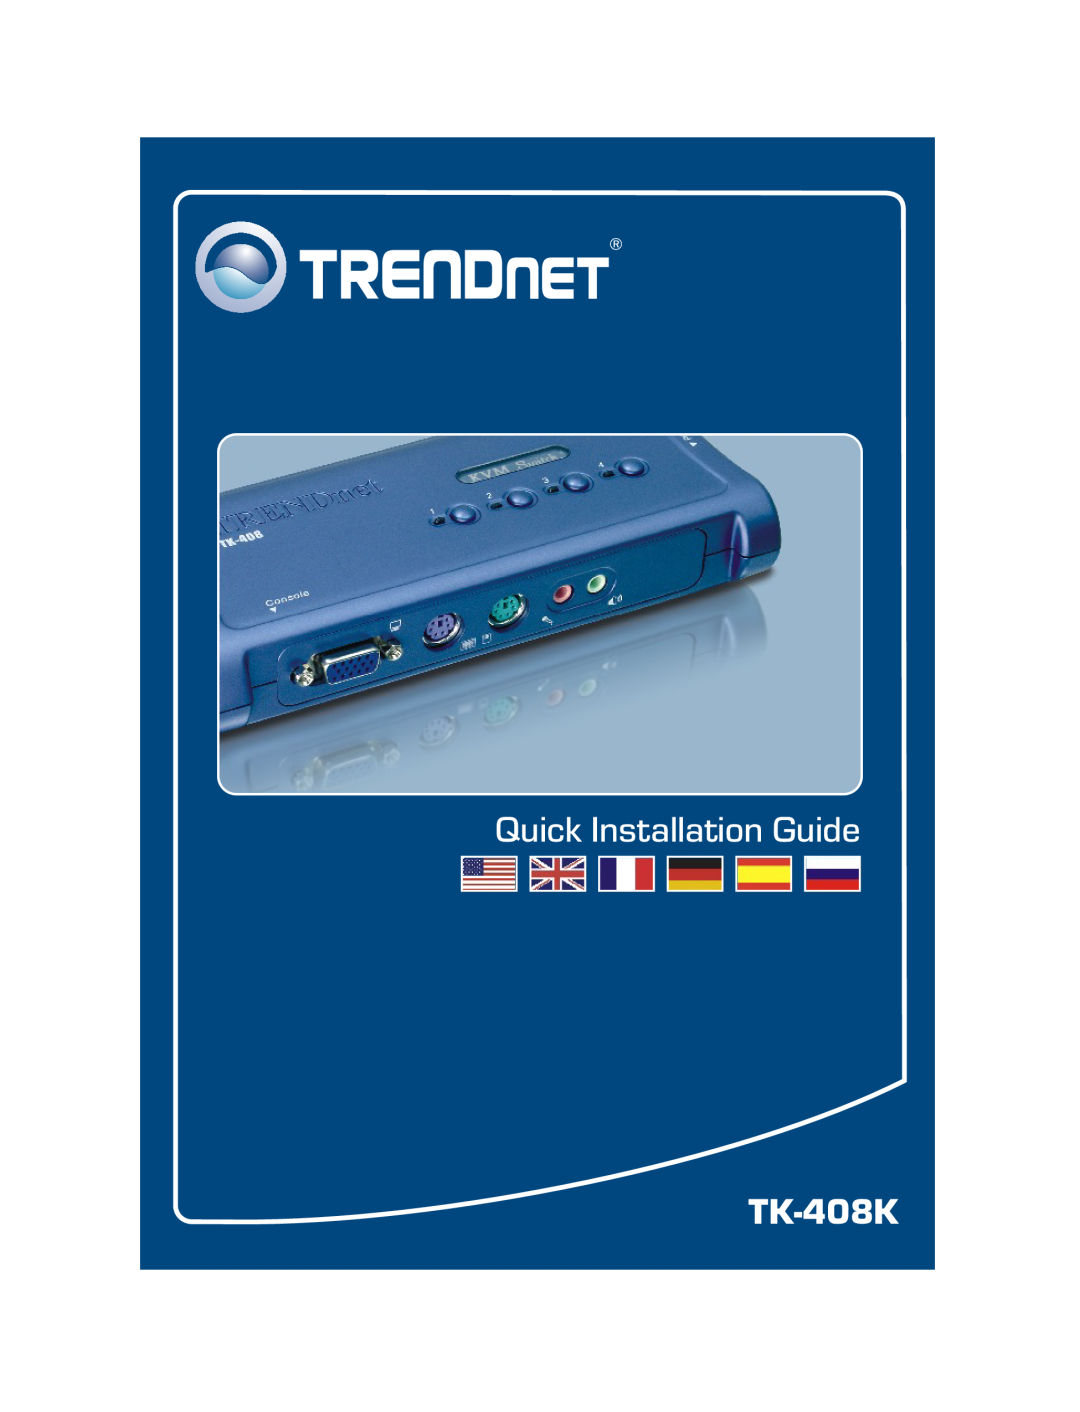 TRENDnet TK-408K manual Quick Installation Guide 